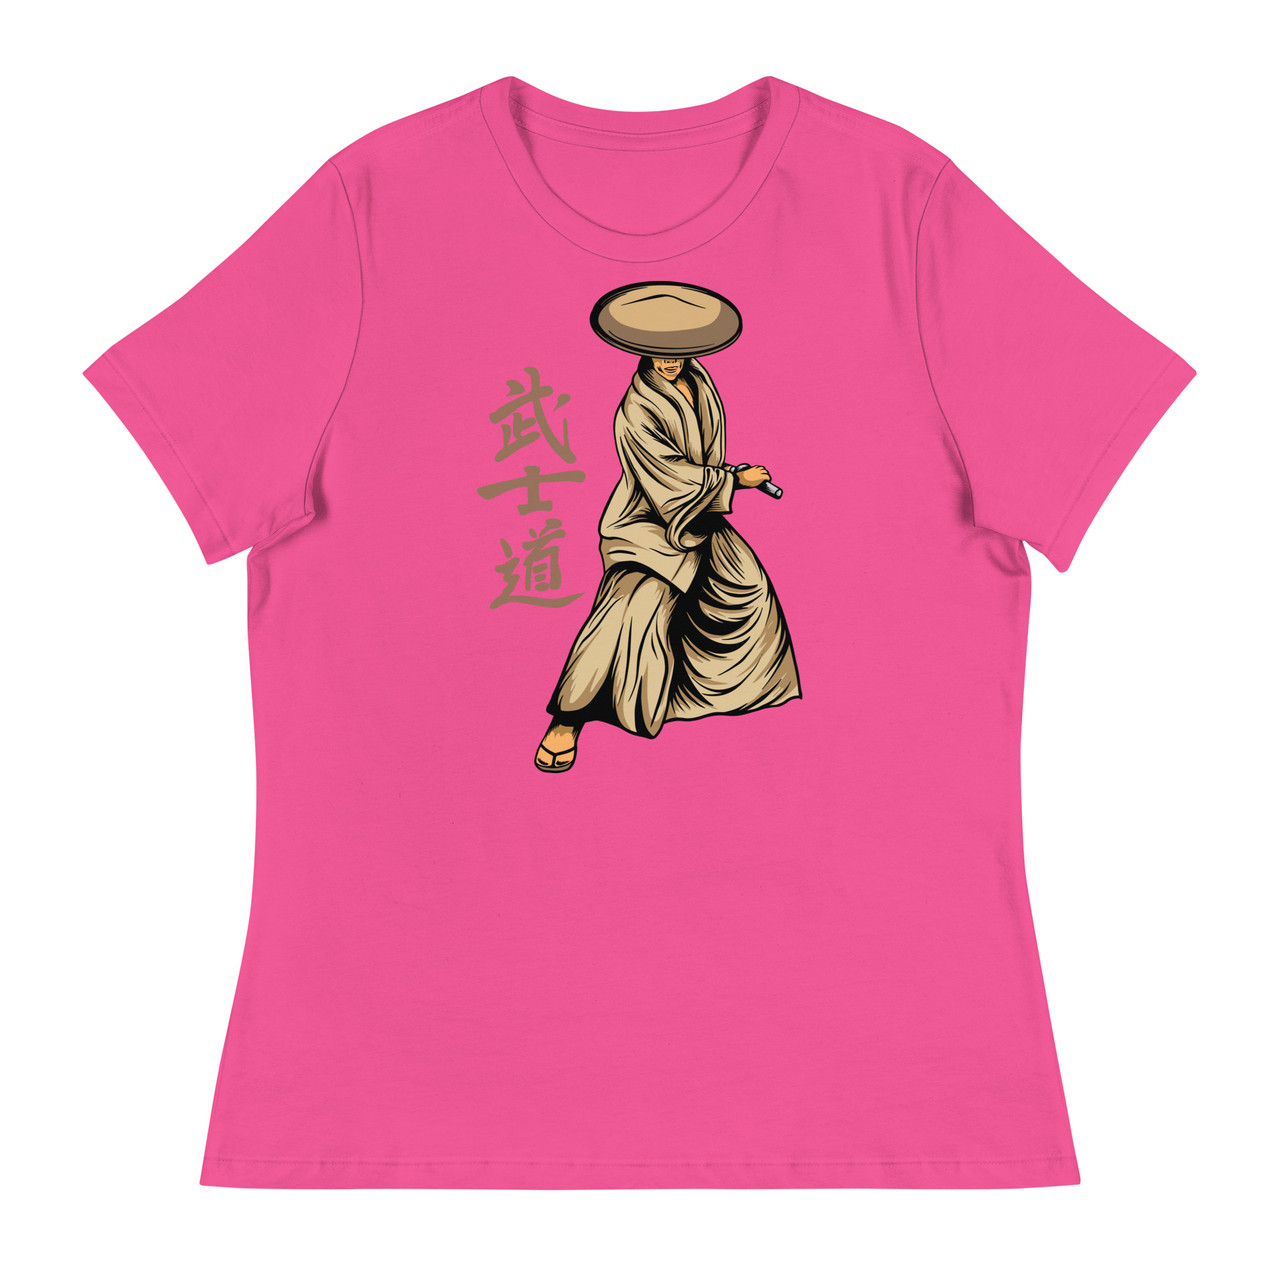 Samurai 13 Women's Relaxed T-Shirt - Bella + Canvas 6400